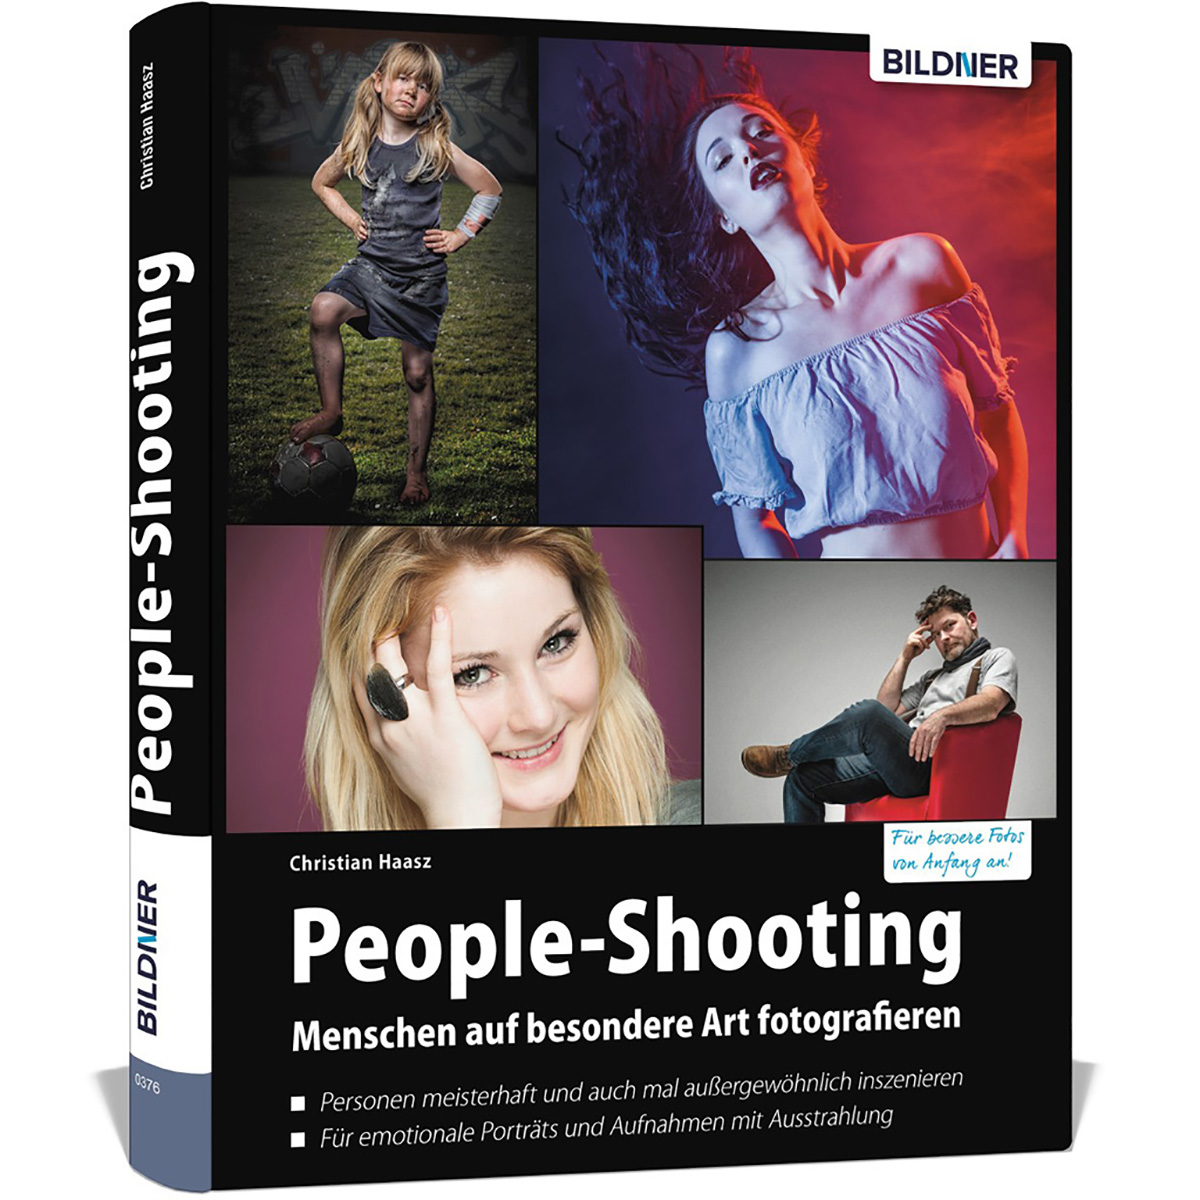 Menschen People-Shooting - auf besondere fotografieren Art